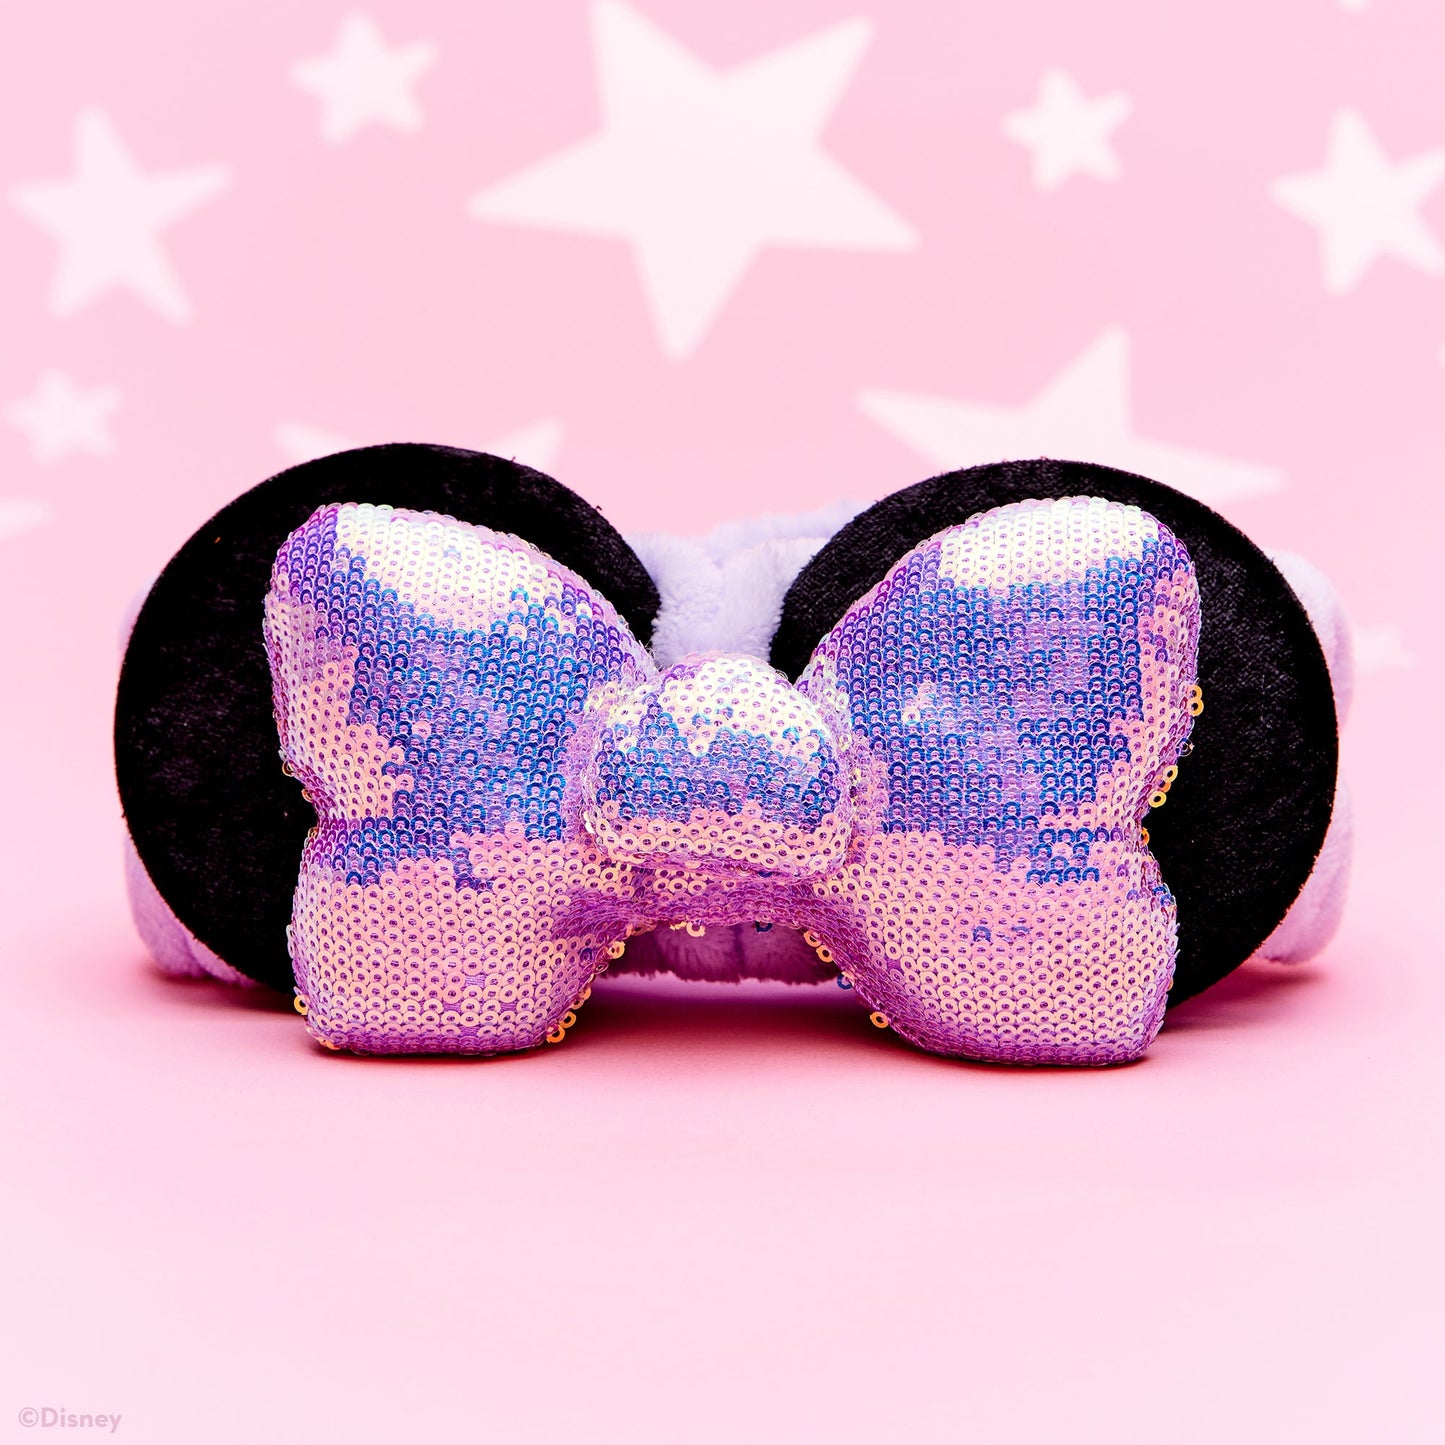 The Crème Shop | Disney: 3D Teddy Headyband™ In "Royal Periwinkle" Headbands The Crème Shop x Disney 